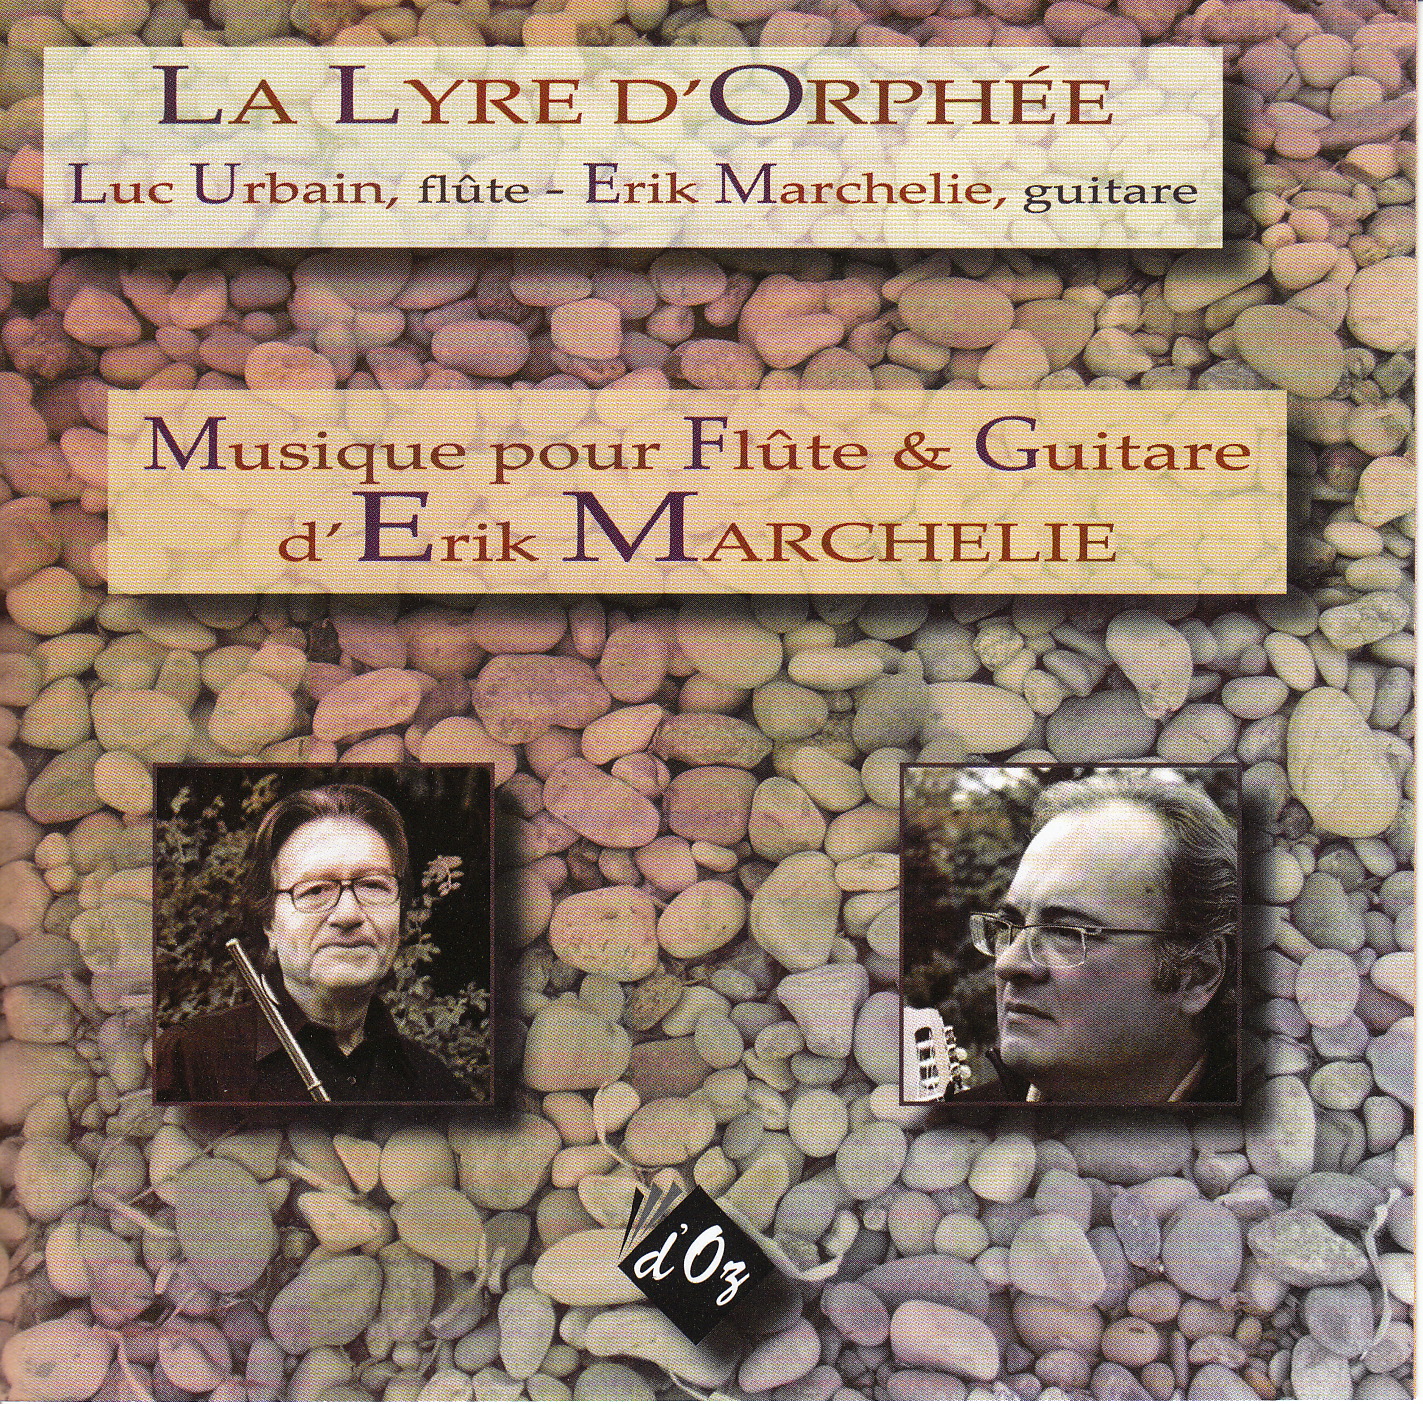 La Lyre d'Orphée: Musique pour Flûte & Guitare